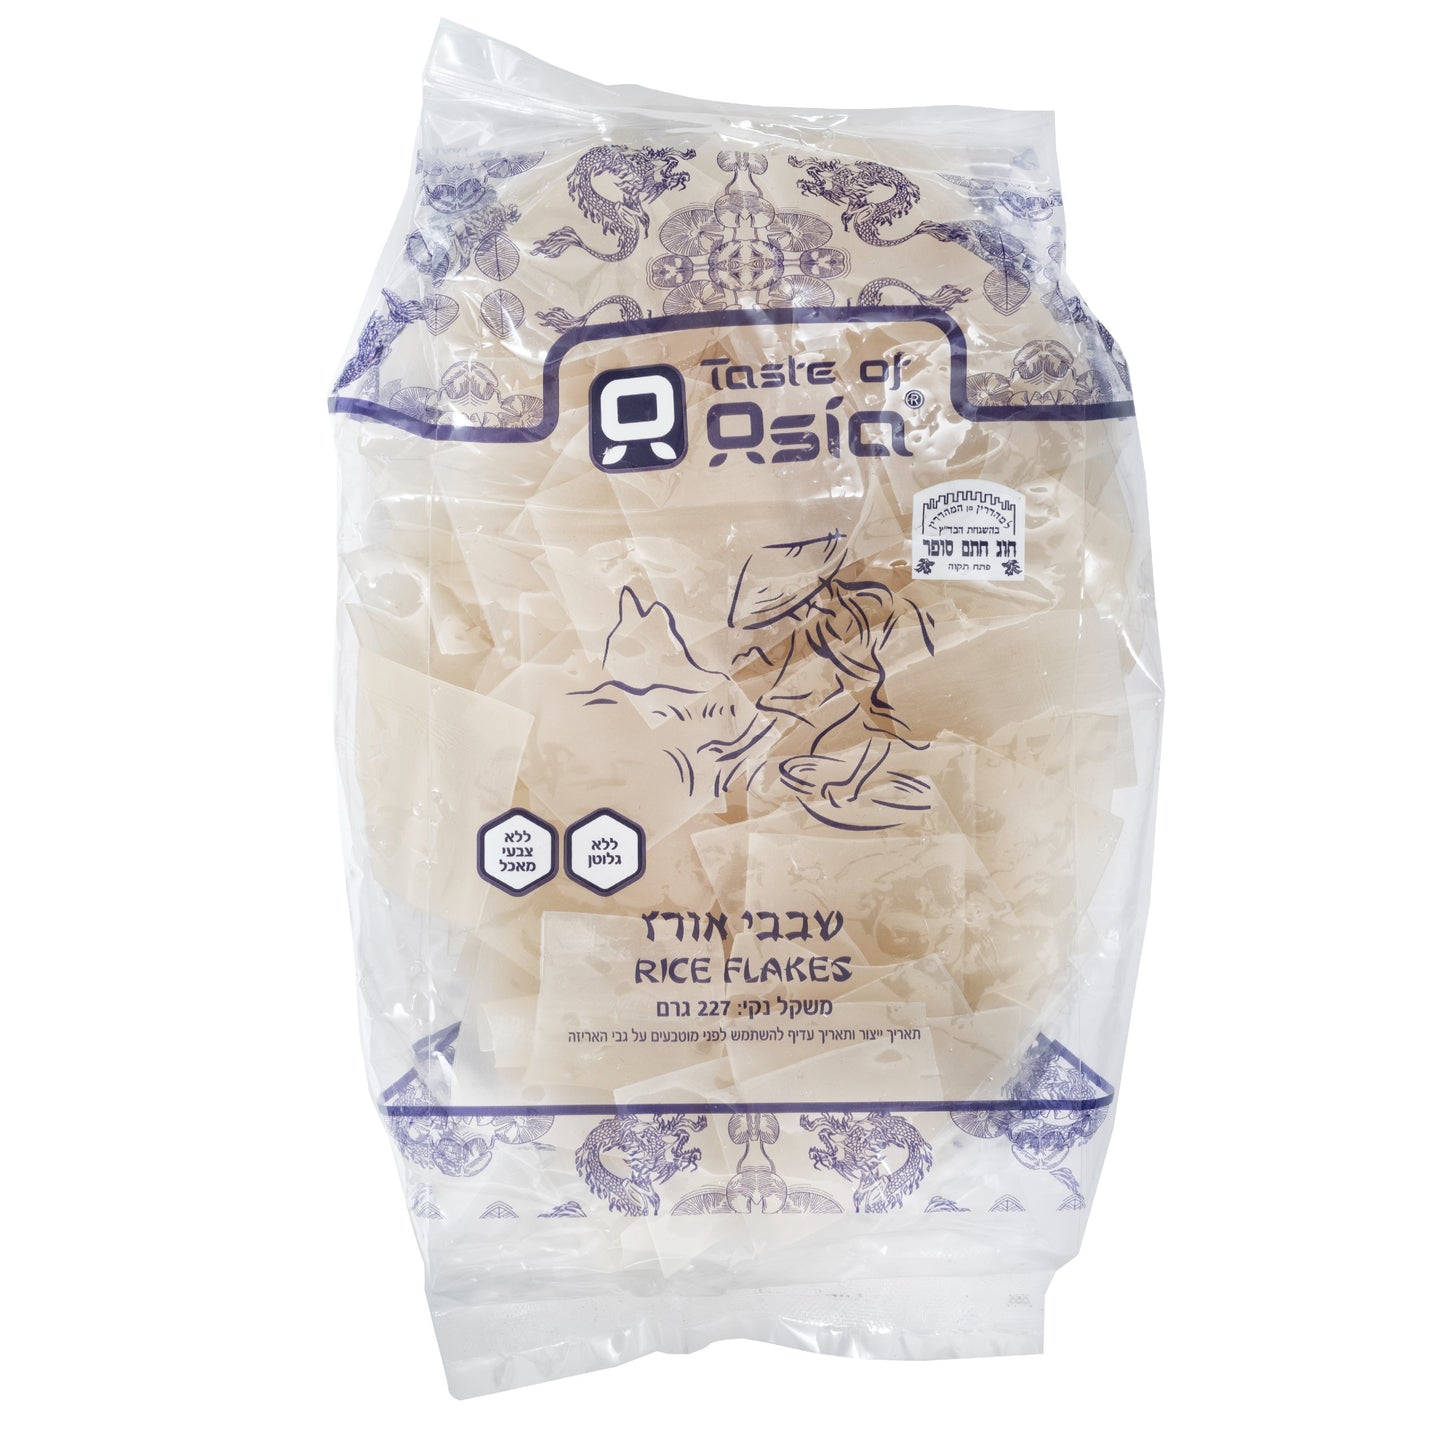 שבבי אורז ללא גלוטן | טעמי אסיה - Taste of Asia - פריקפוא